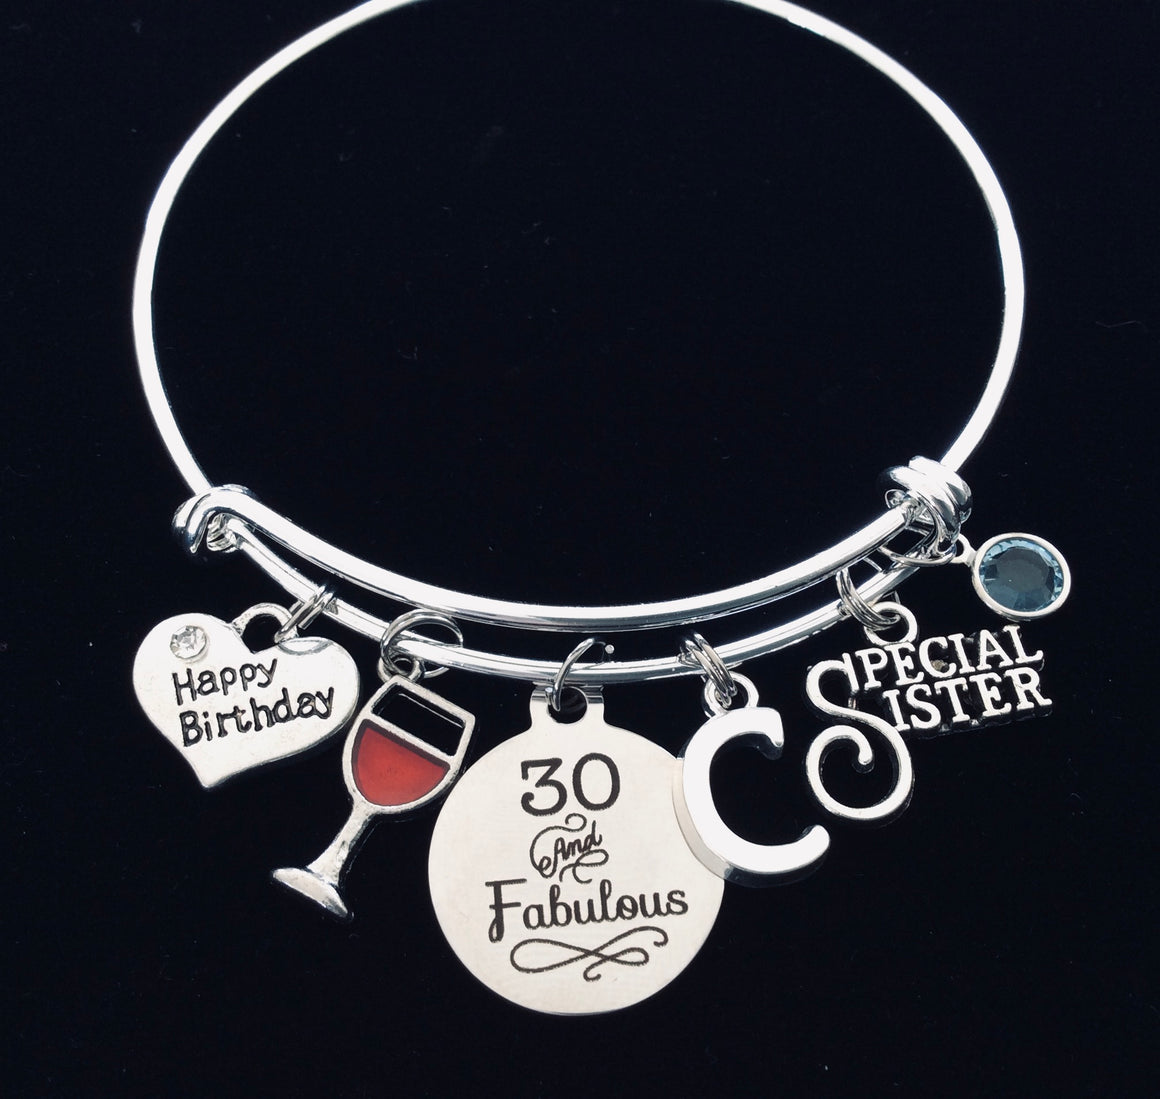 30th birthday gift for sister charm bracelet